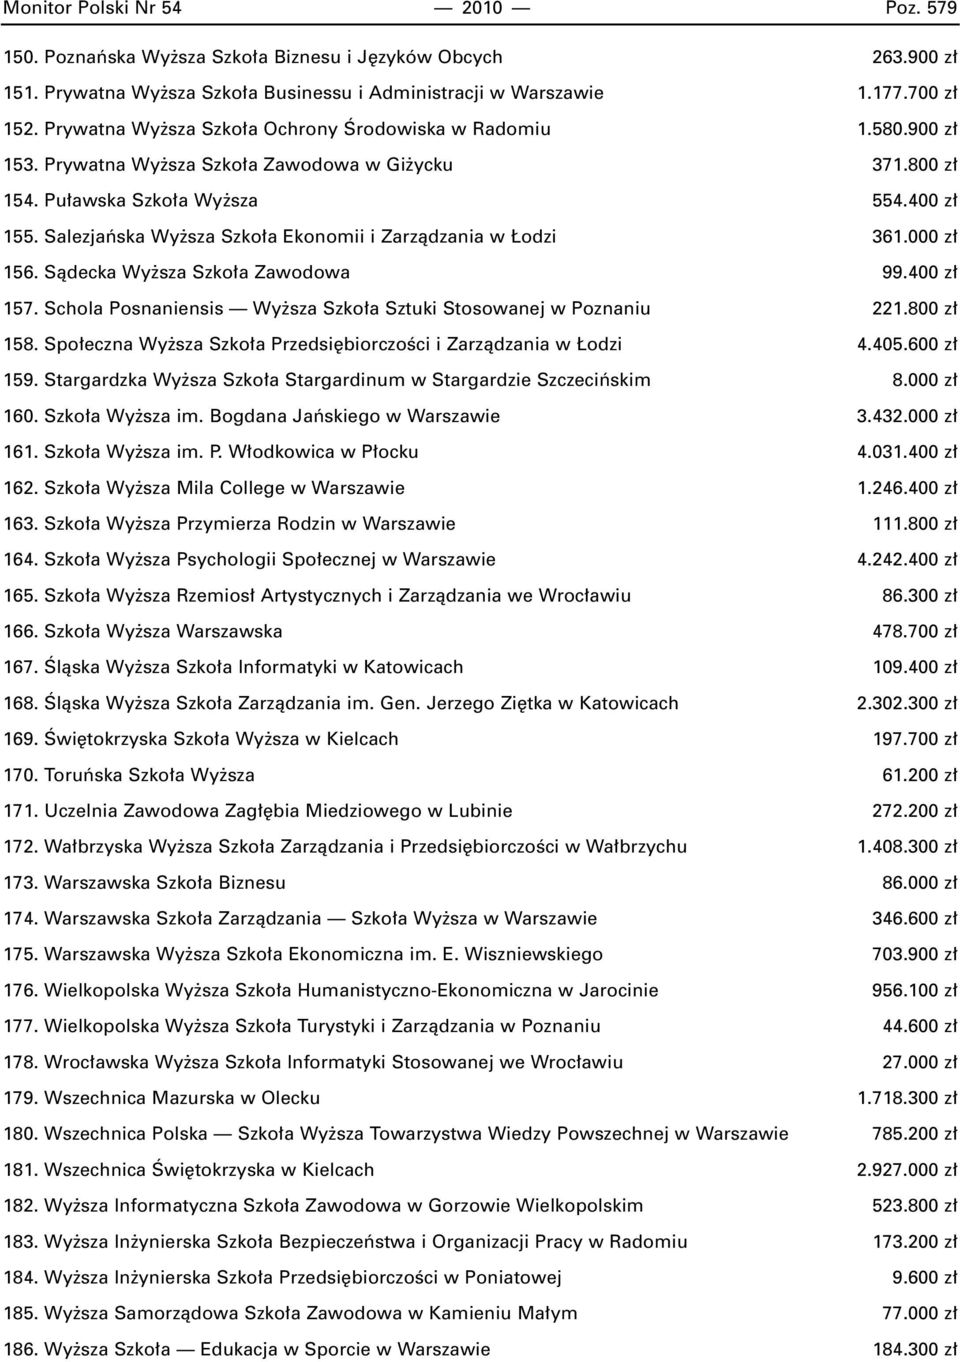 Salezjaƒska Wy sza Szko a Ekonomii i Zarzàdzania w odzi 361.000 z 156. Sàdecka Wy sza Szko a Zawodowa 99.400 z 157. Schola Posnaniensis Wy sza Szko a Sztuki Stosowanej w Poznaniu 221.800 z 158.